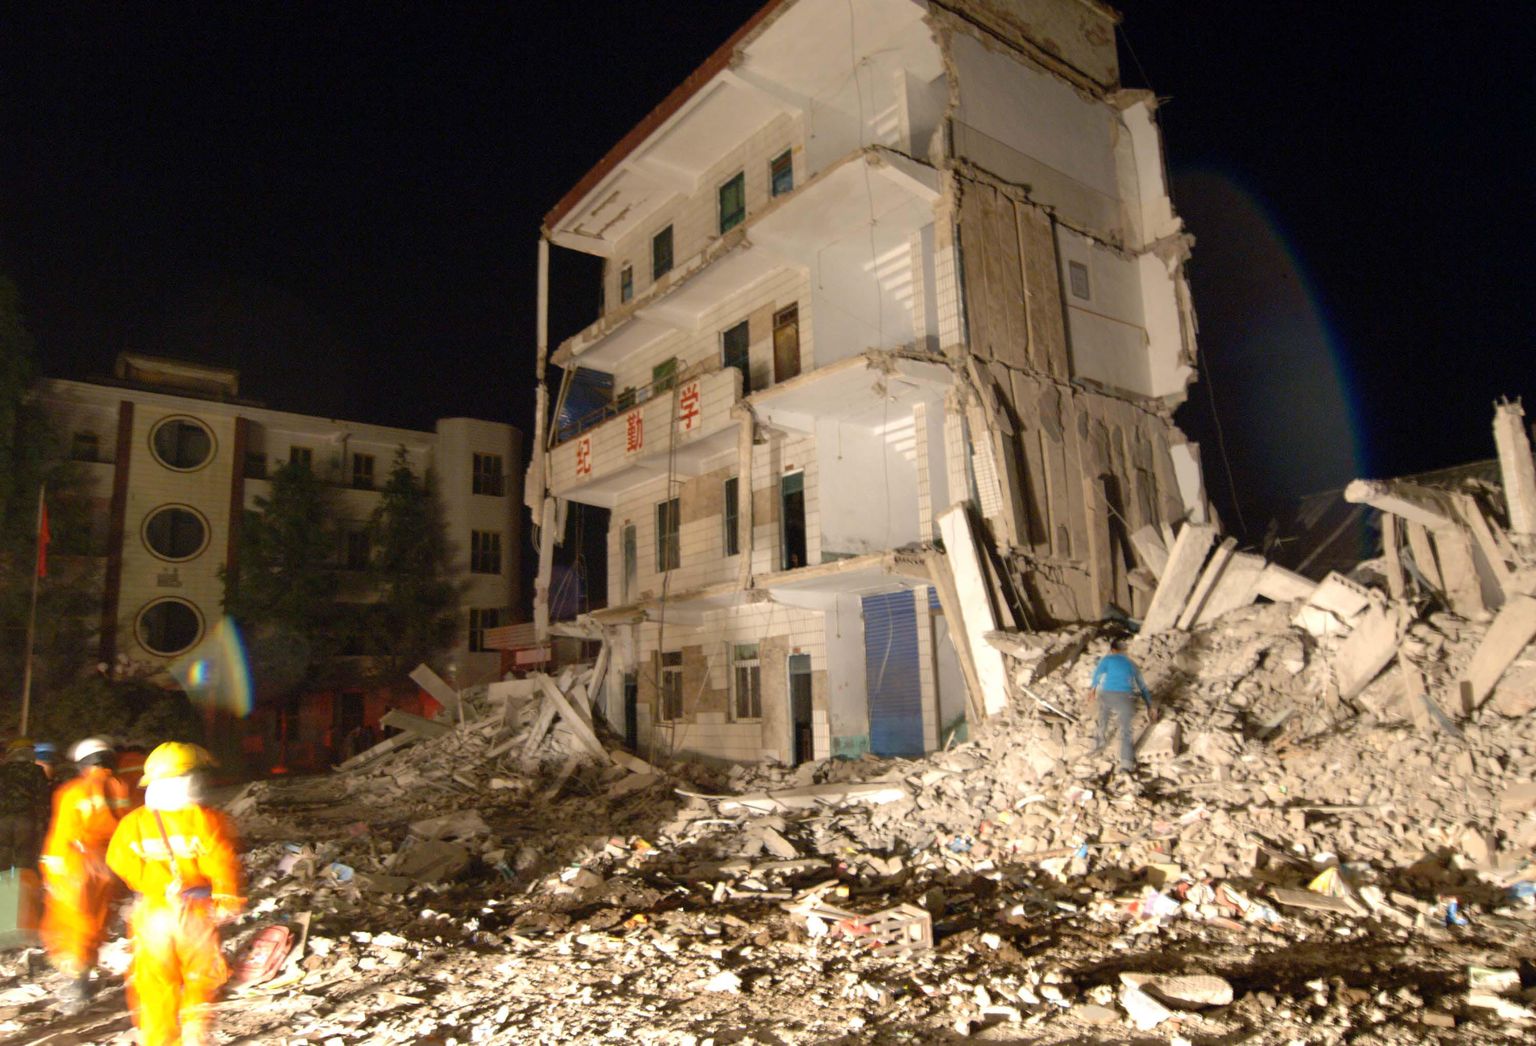 Hiinas 2008. aastal toimunud maavärina tagajärjed